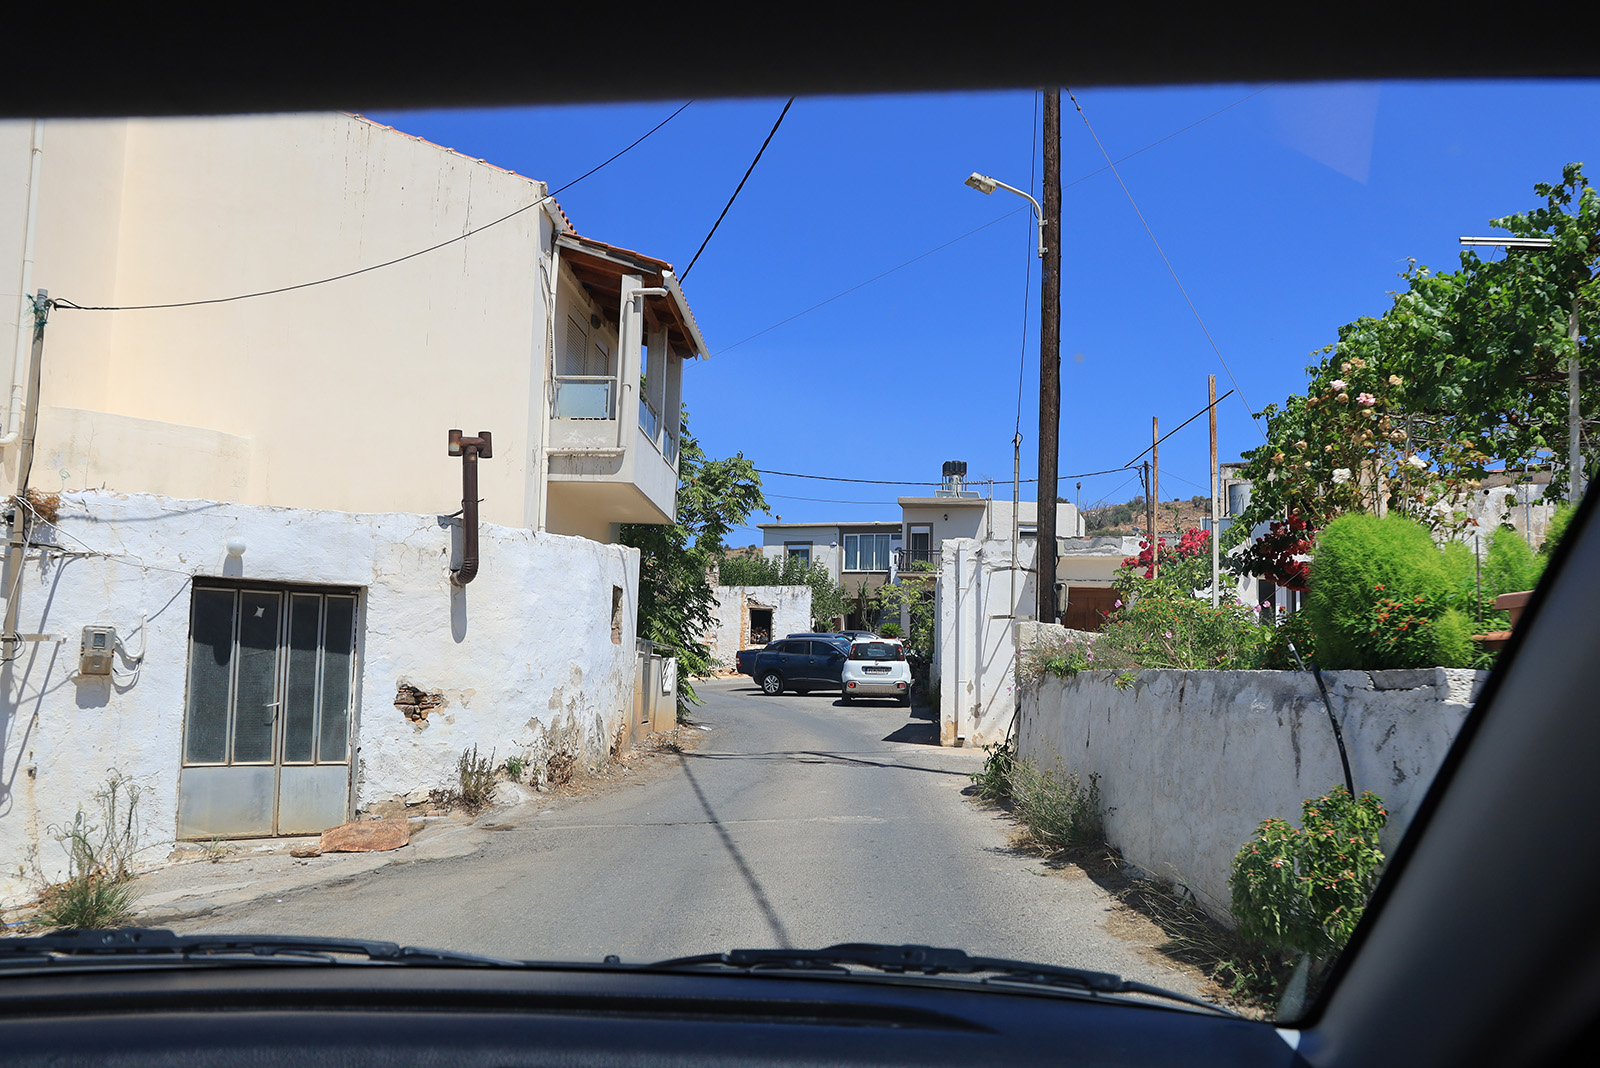 Kretas småvägar och småbyar